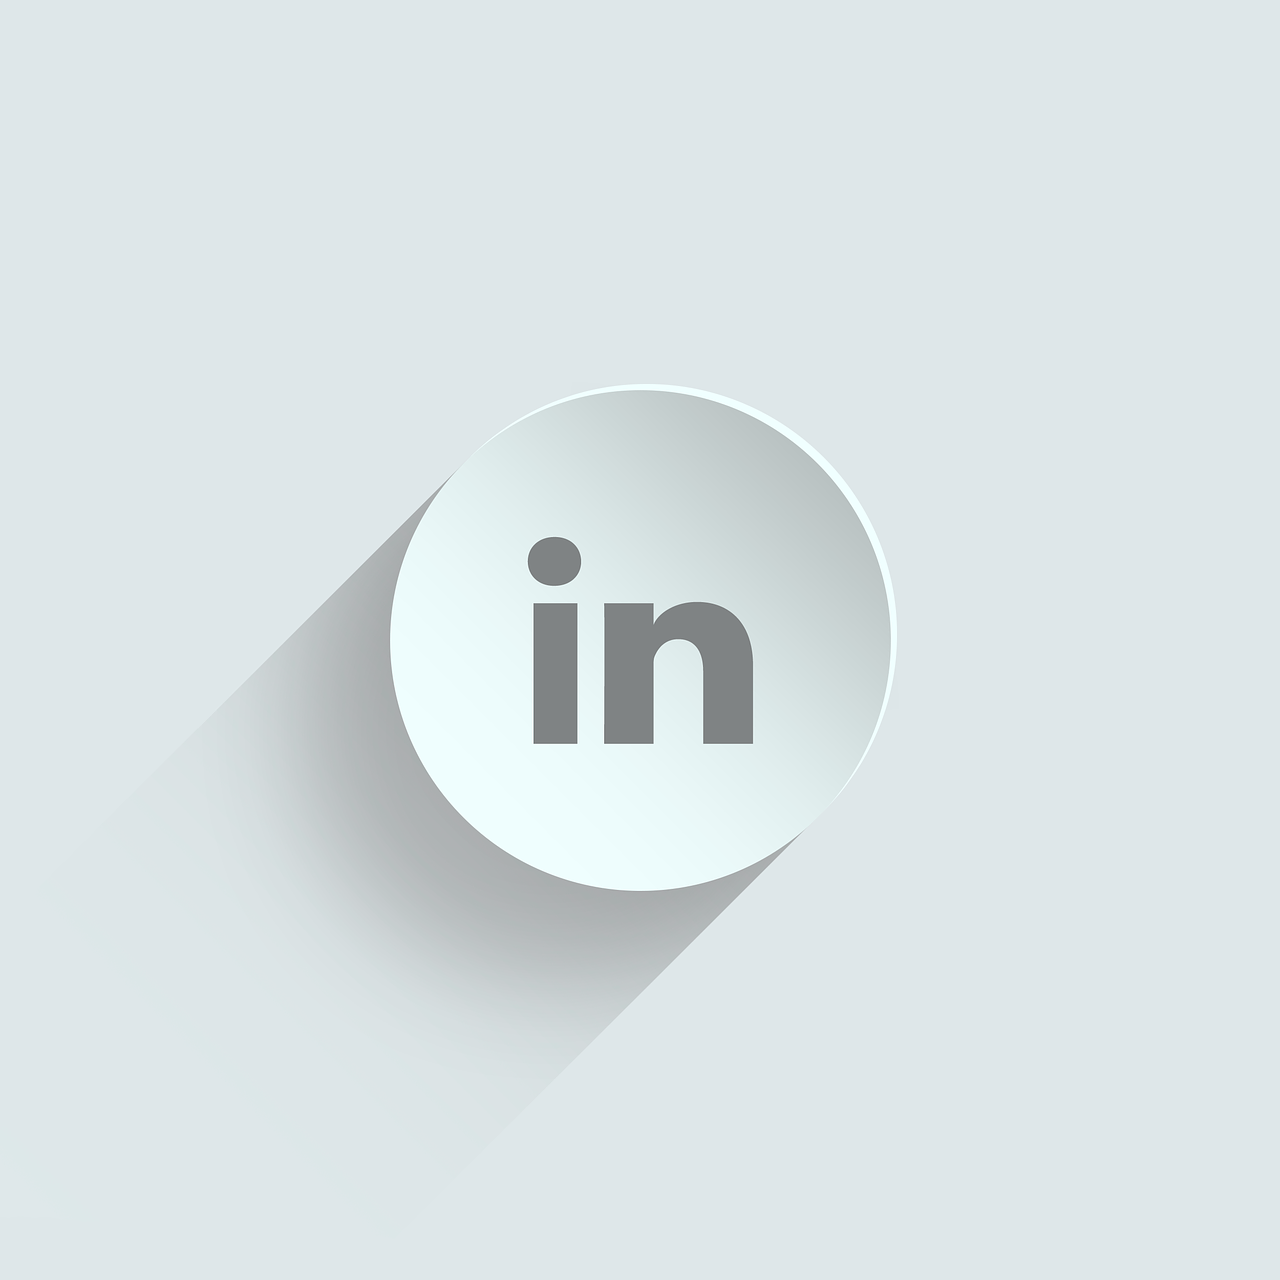 linkedin logo, linkedin live